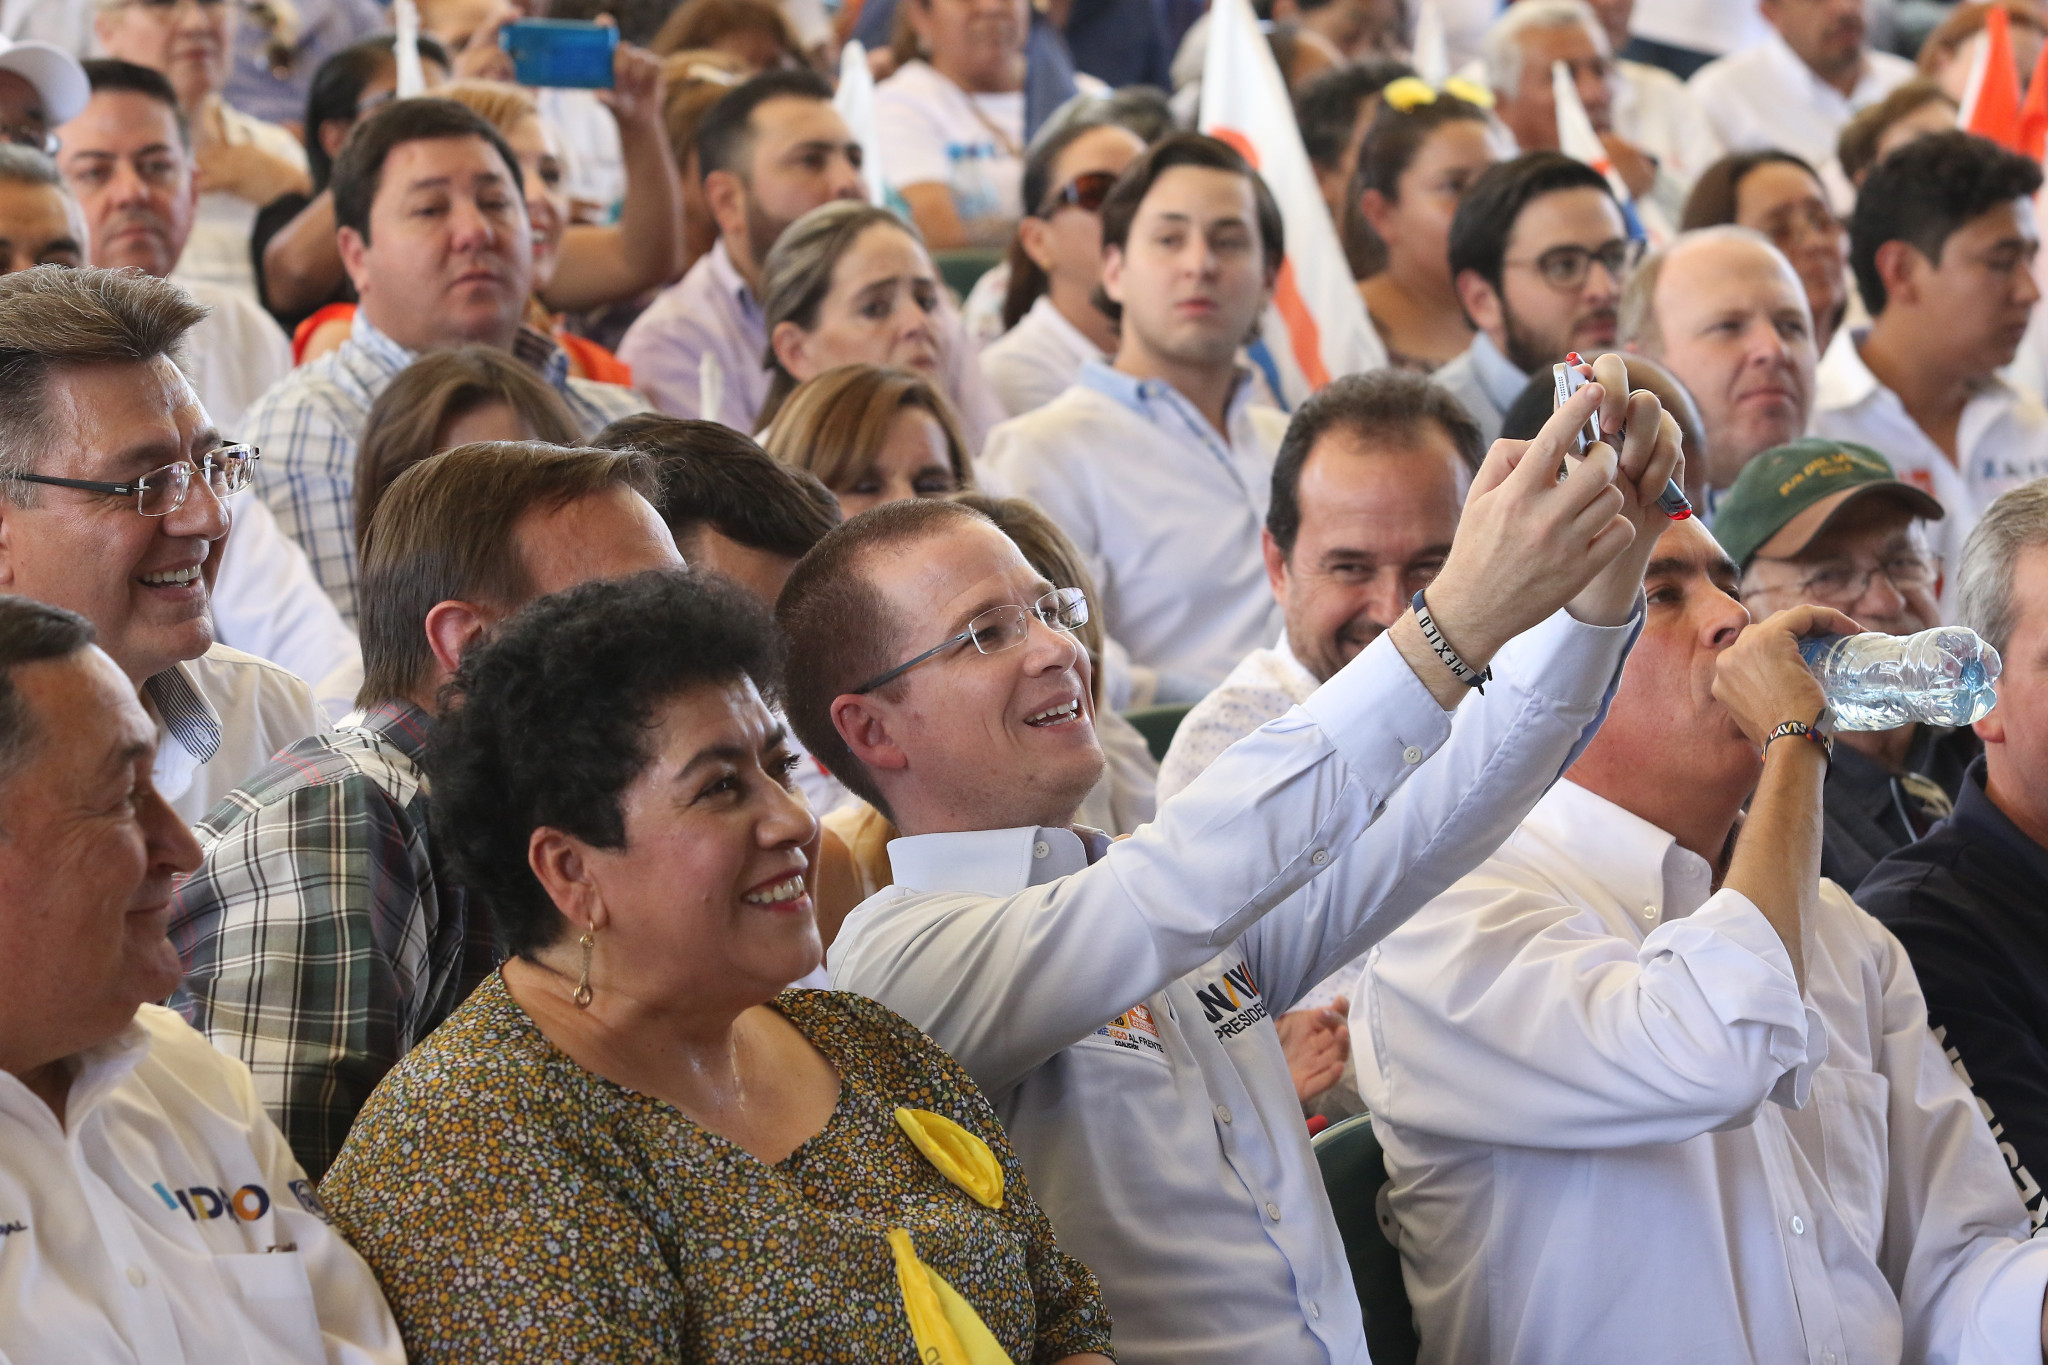 $!Aquí en Coahuila ha habido muchísima corrupción: Anaya #Candidatum